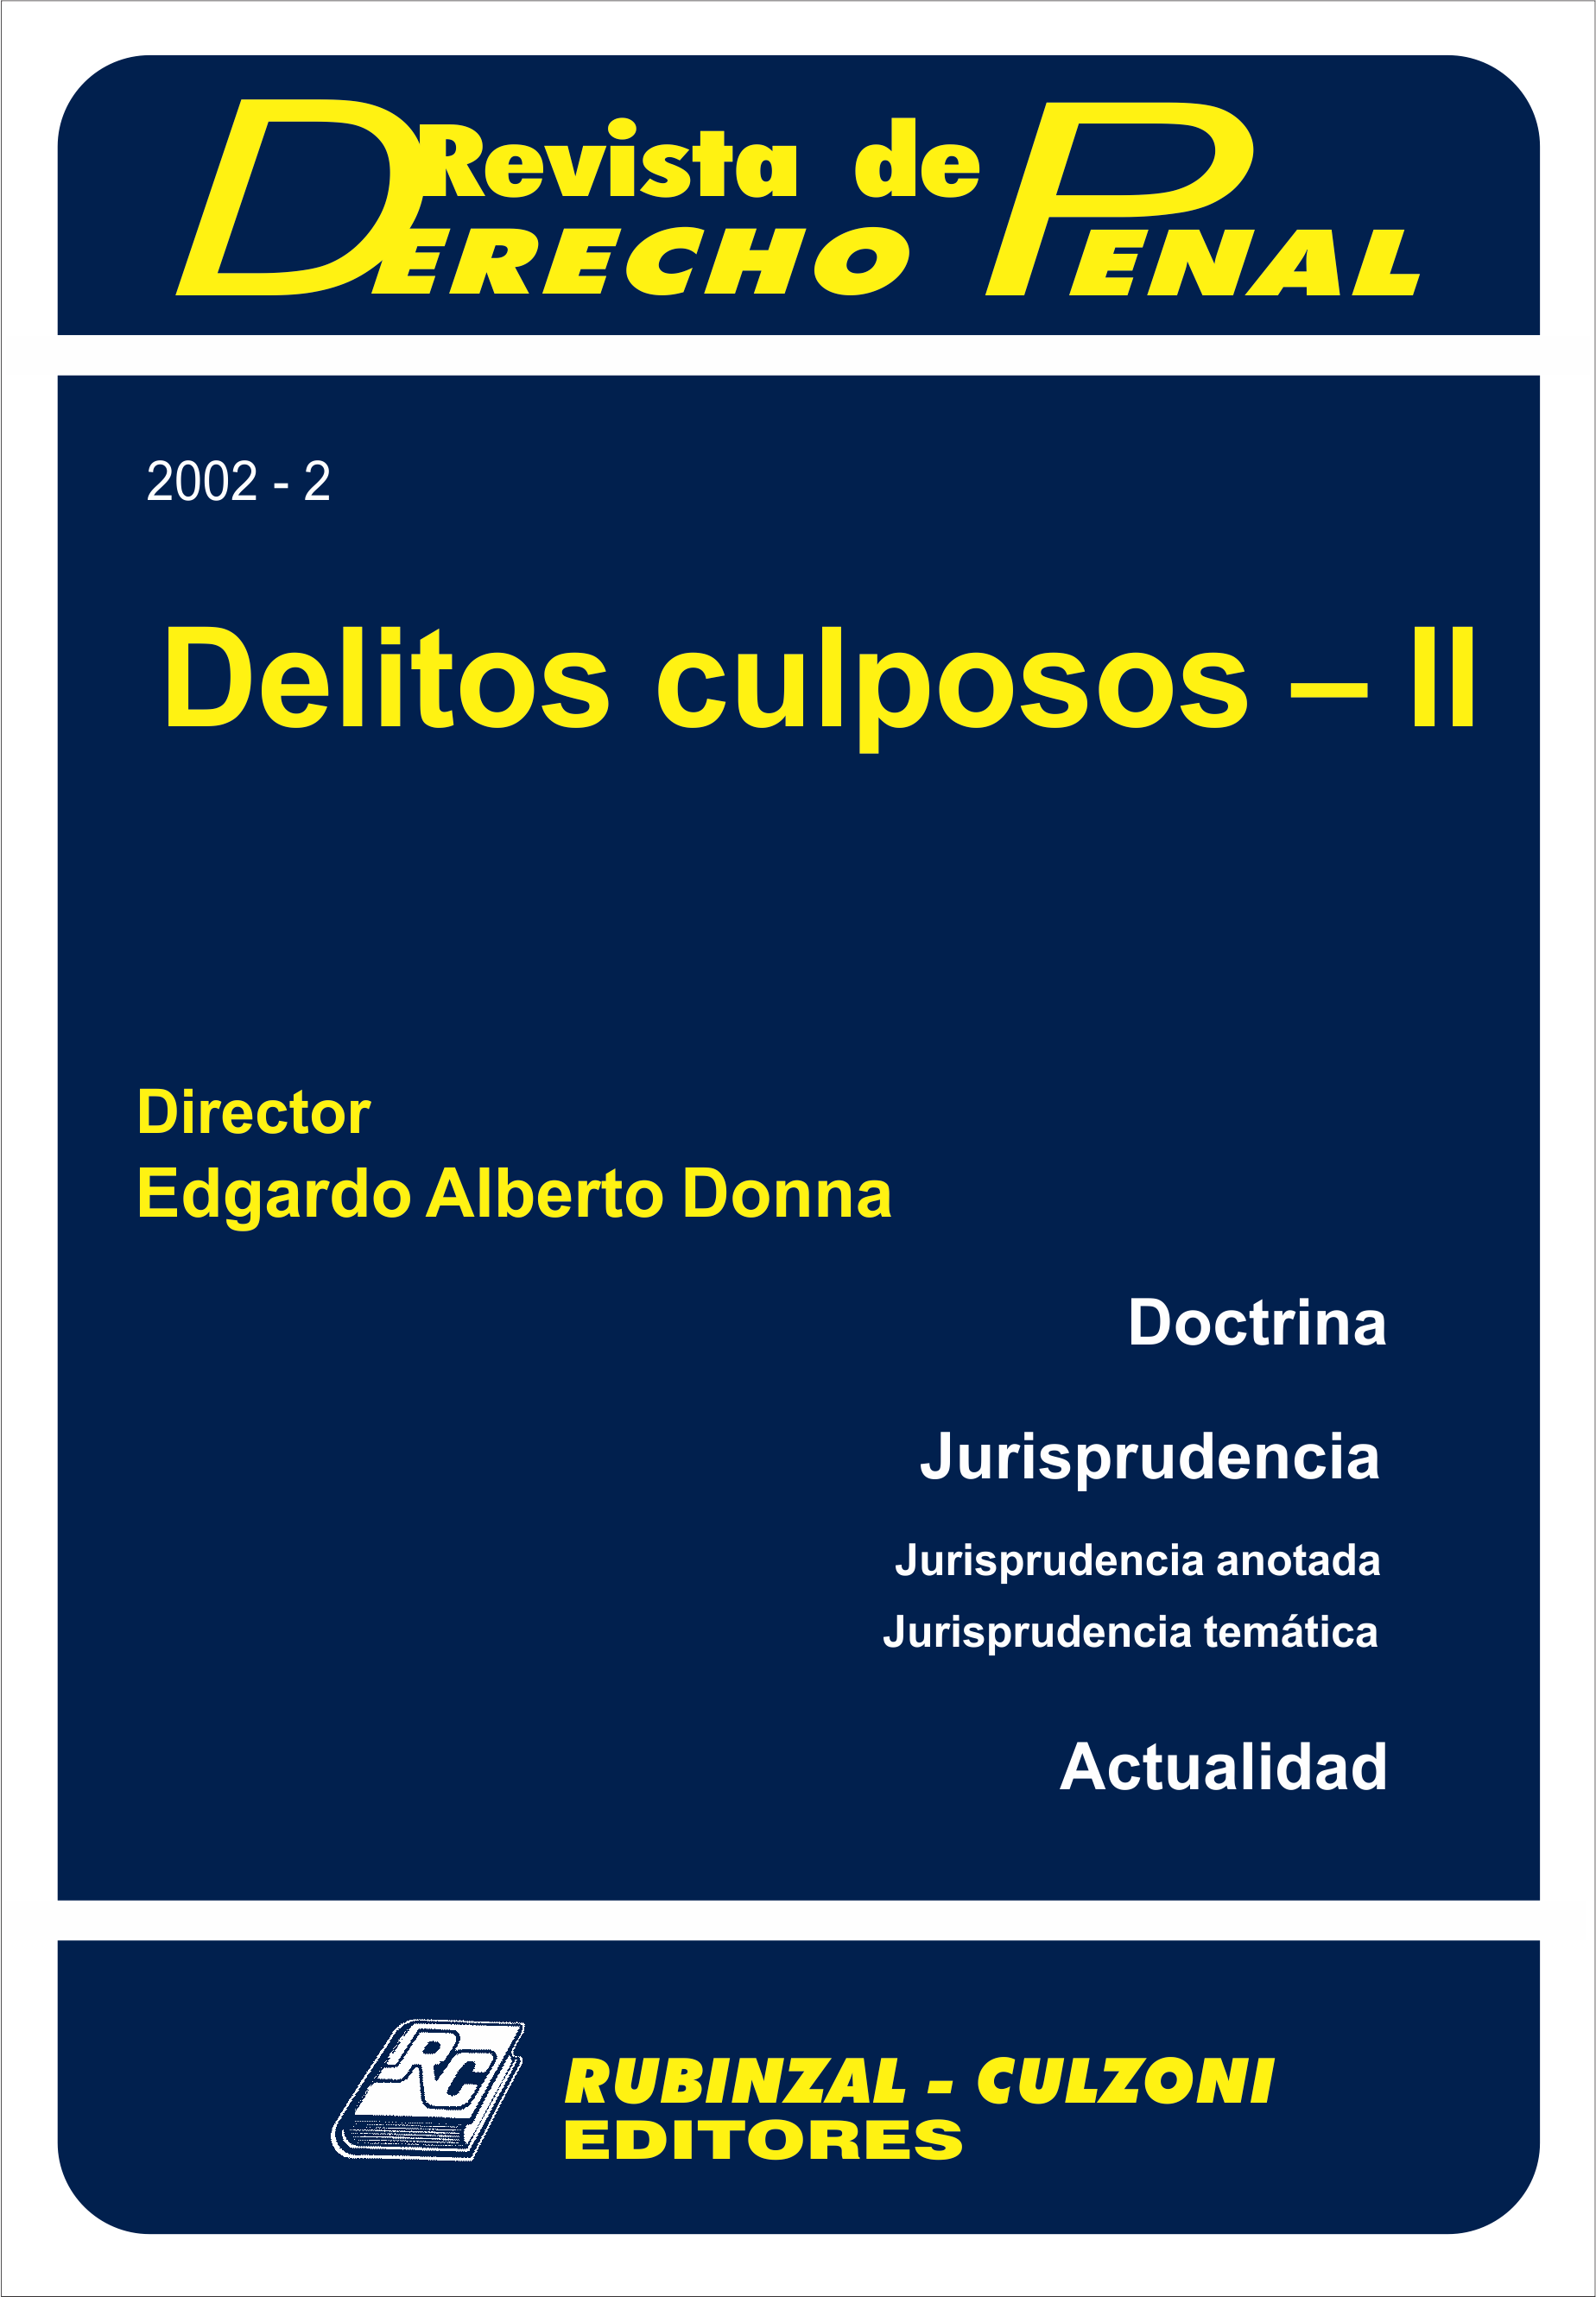 Revista de Derecho Penal - Delitos culposos - II